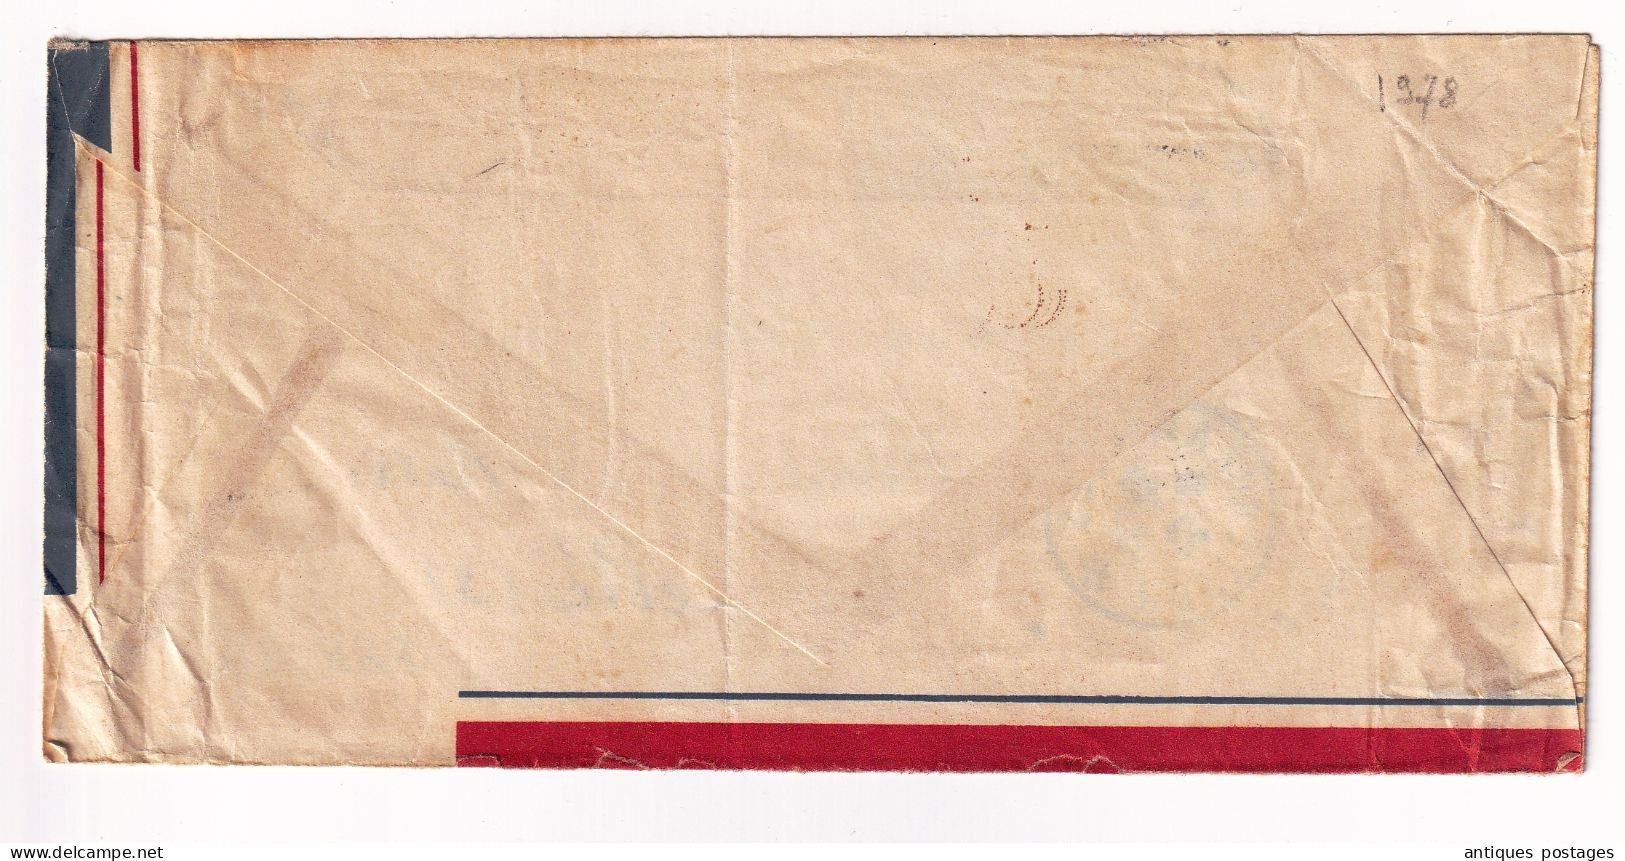 1952 Postes Aux Armées T.O.E. Théâtres D'Opérations Extérieures Capitaine Lehot Secteur Postal 50630 Cuyppers Bruxelles - Guerre D'Indochine / Viêt-Nam